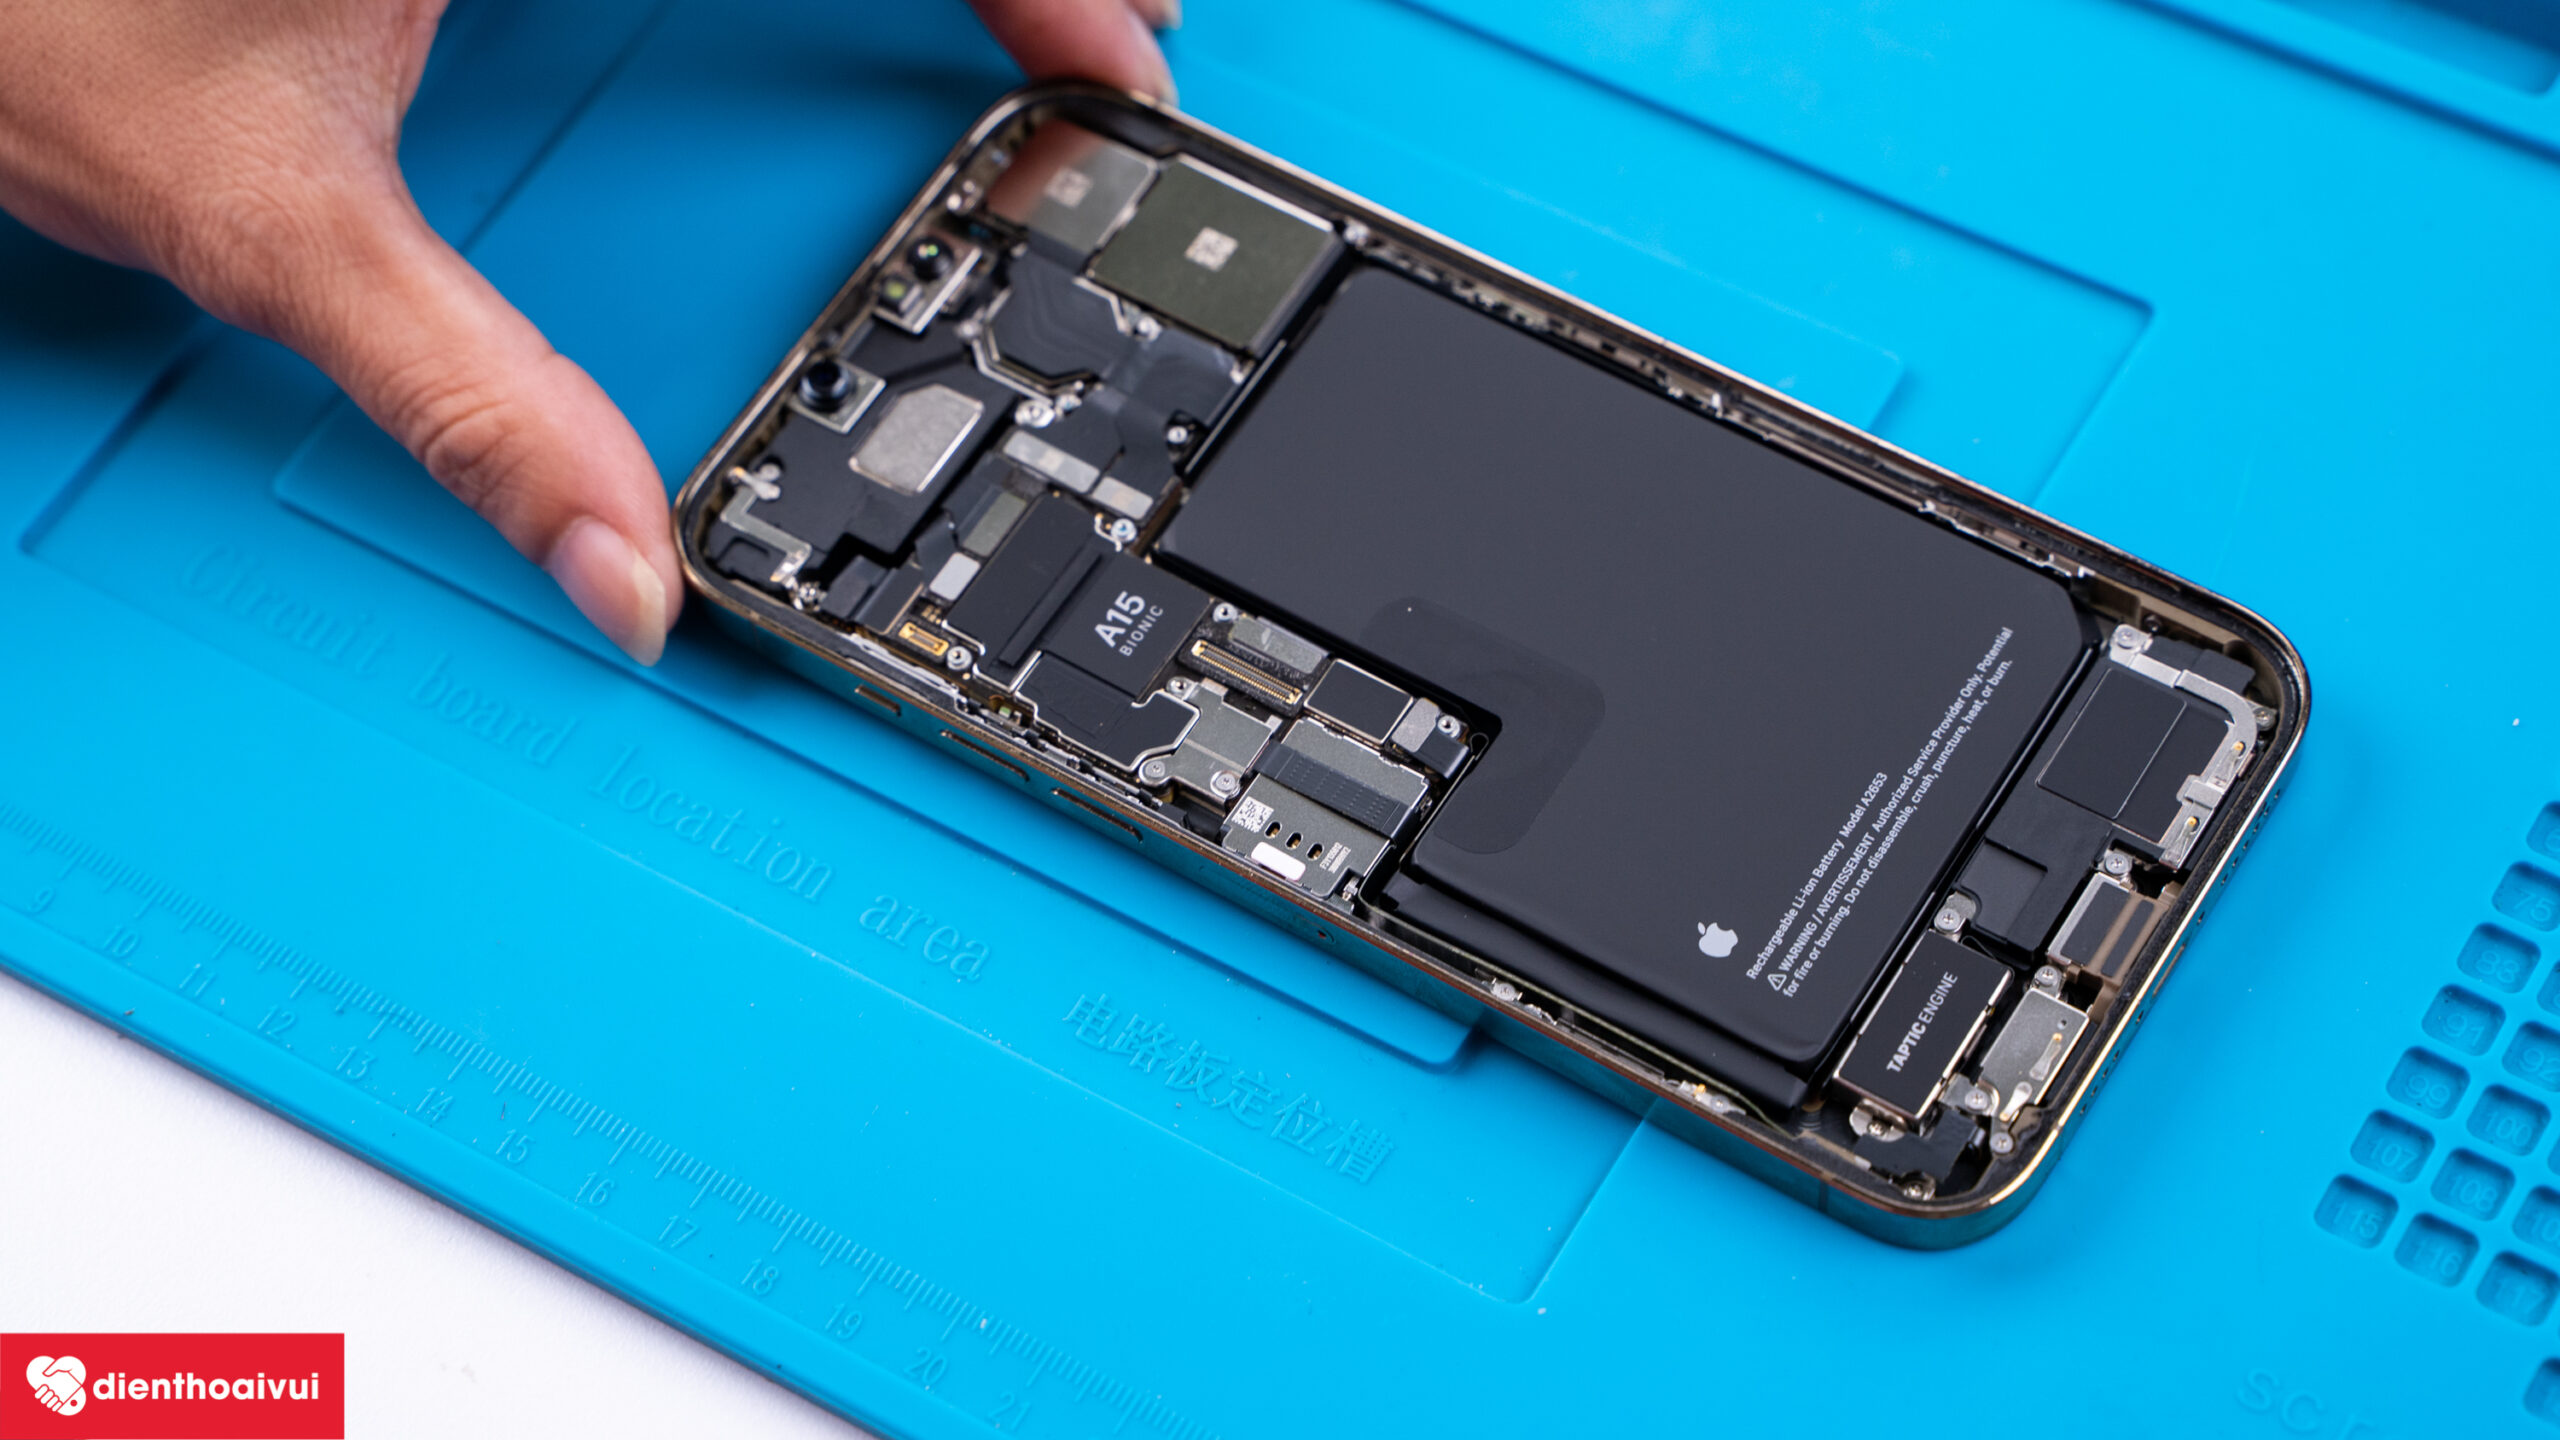 Sforum - Trang thông tin công nghệ mới nhất iPhone-13-PM-8-scaled Tháo tung linh kiện iPhone 13 Pro/Pro Max và iPad mini 6 đầu tiên tại Việt Nam 